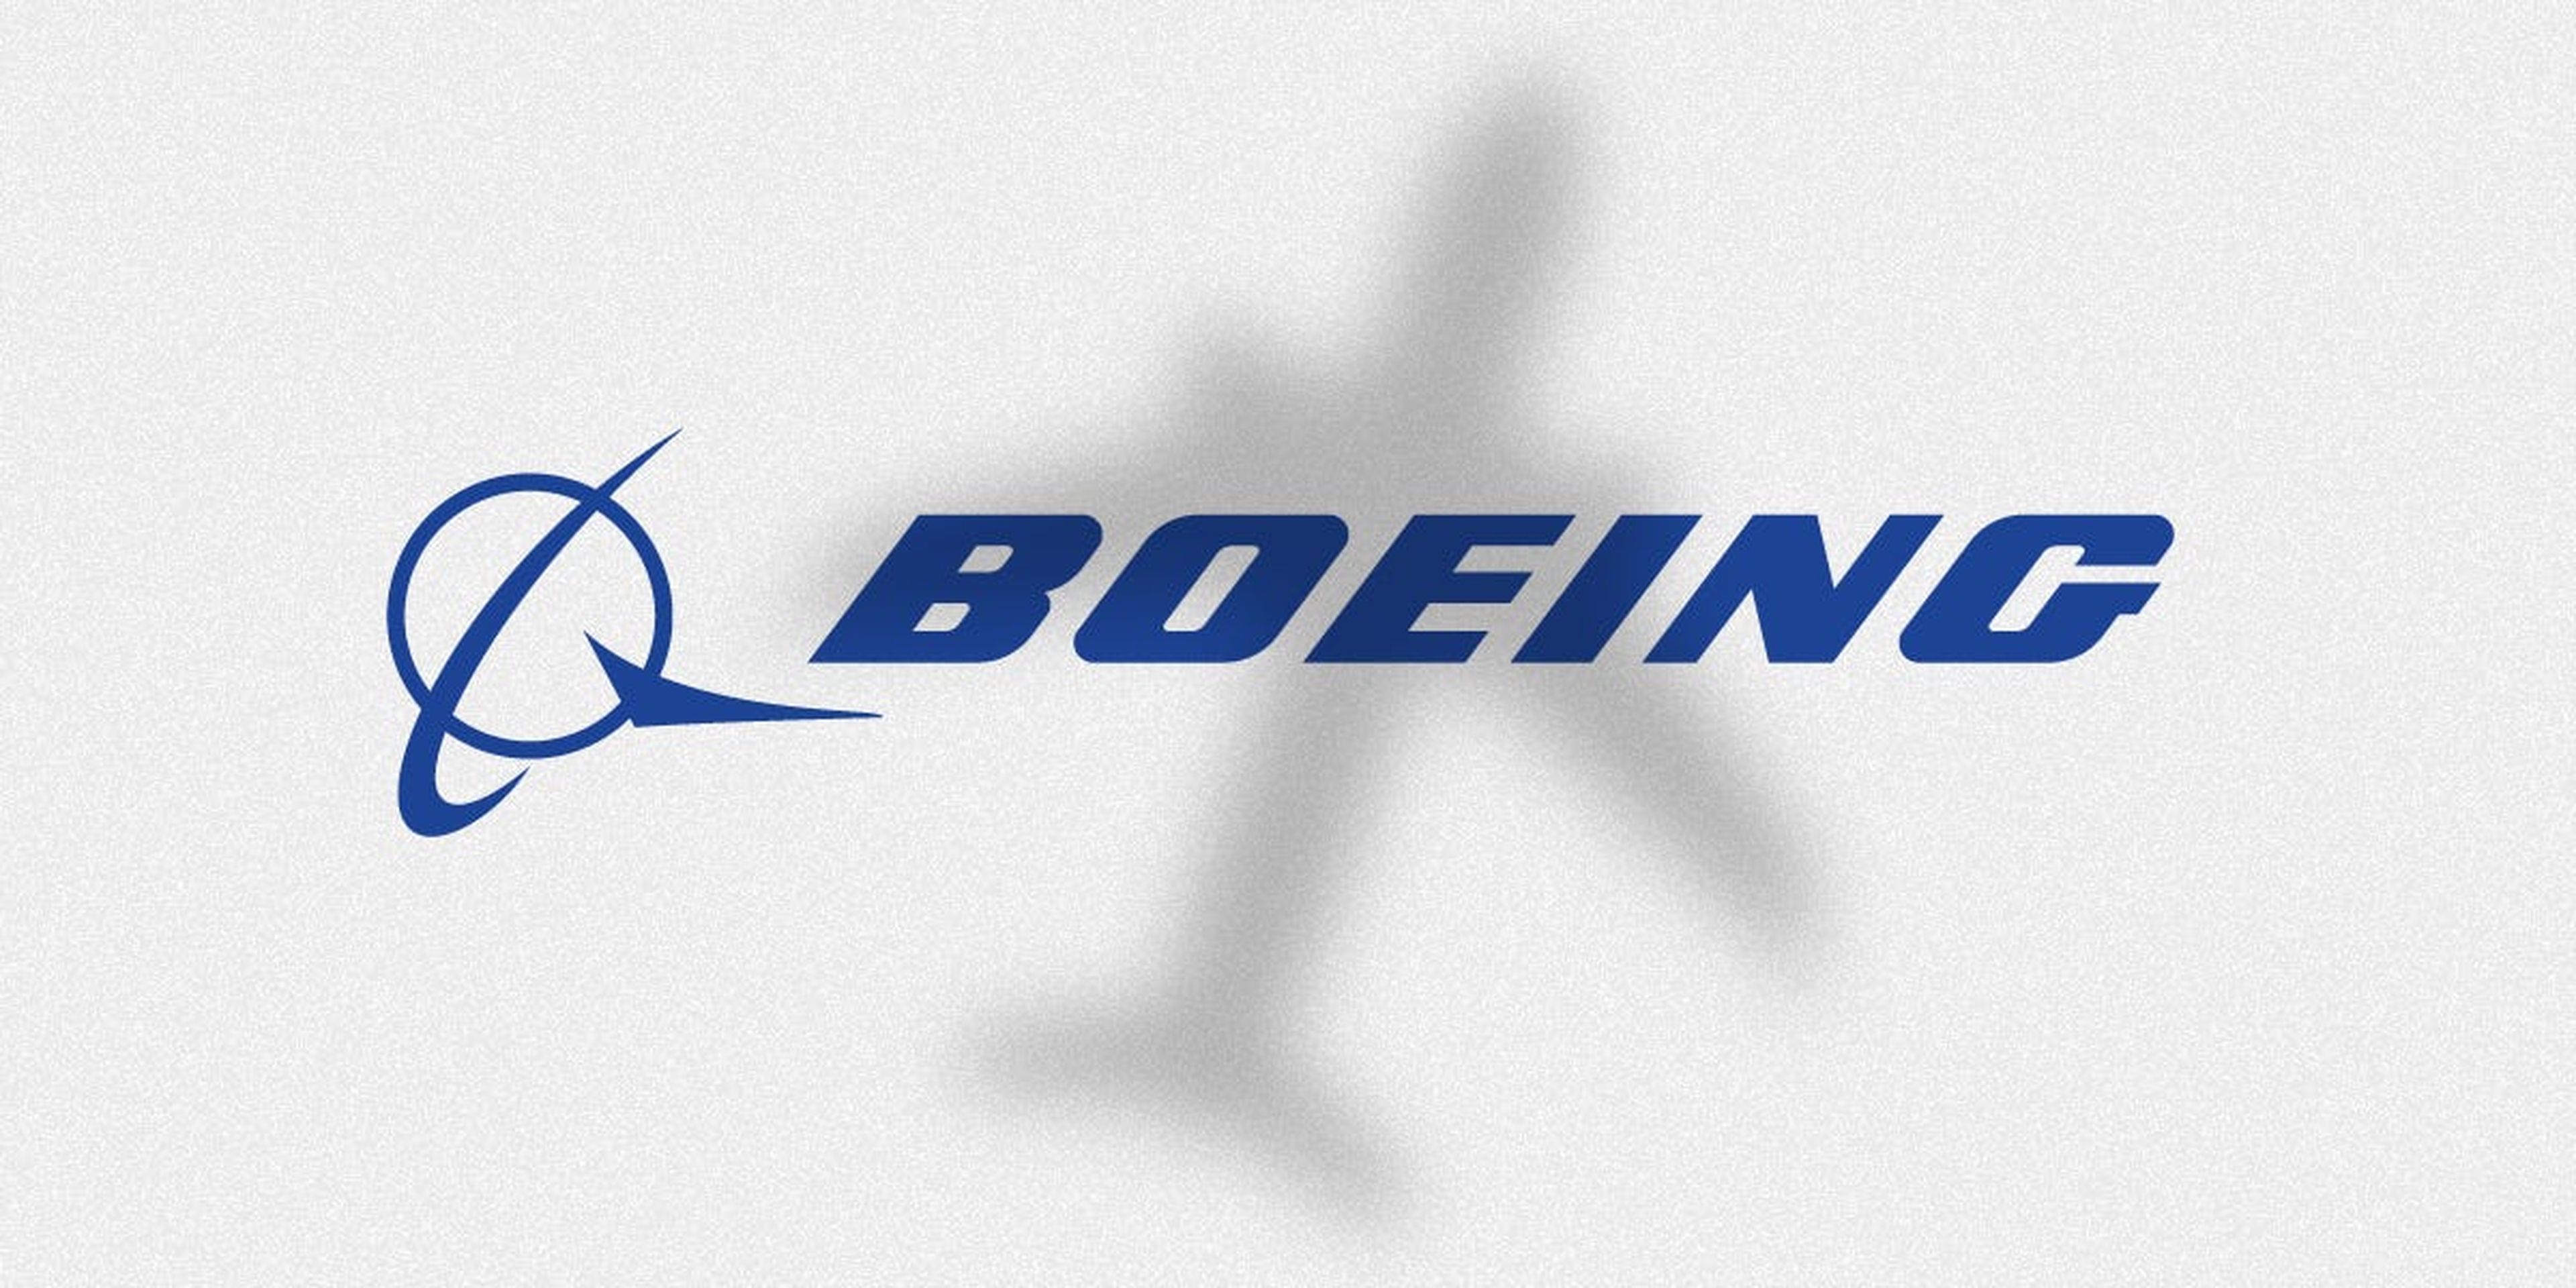 Boeing se enfrenta a la mayor crisis de su historia mientras lidia con las consecuencias de los accidentes.